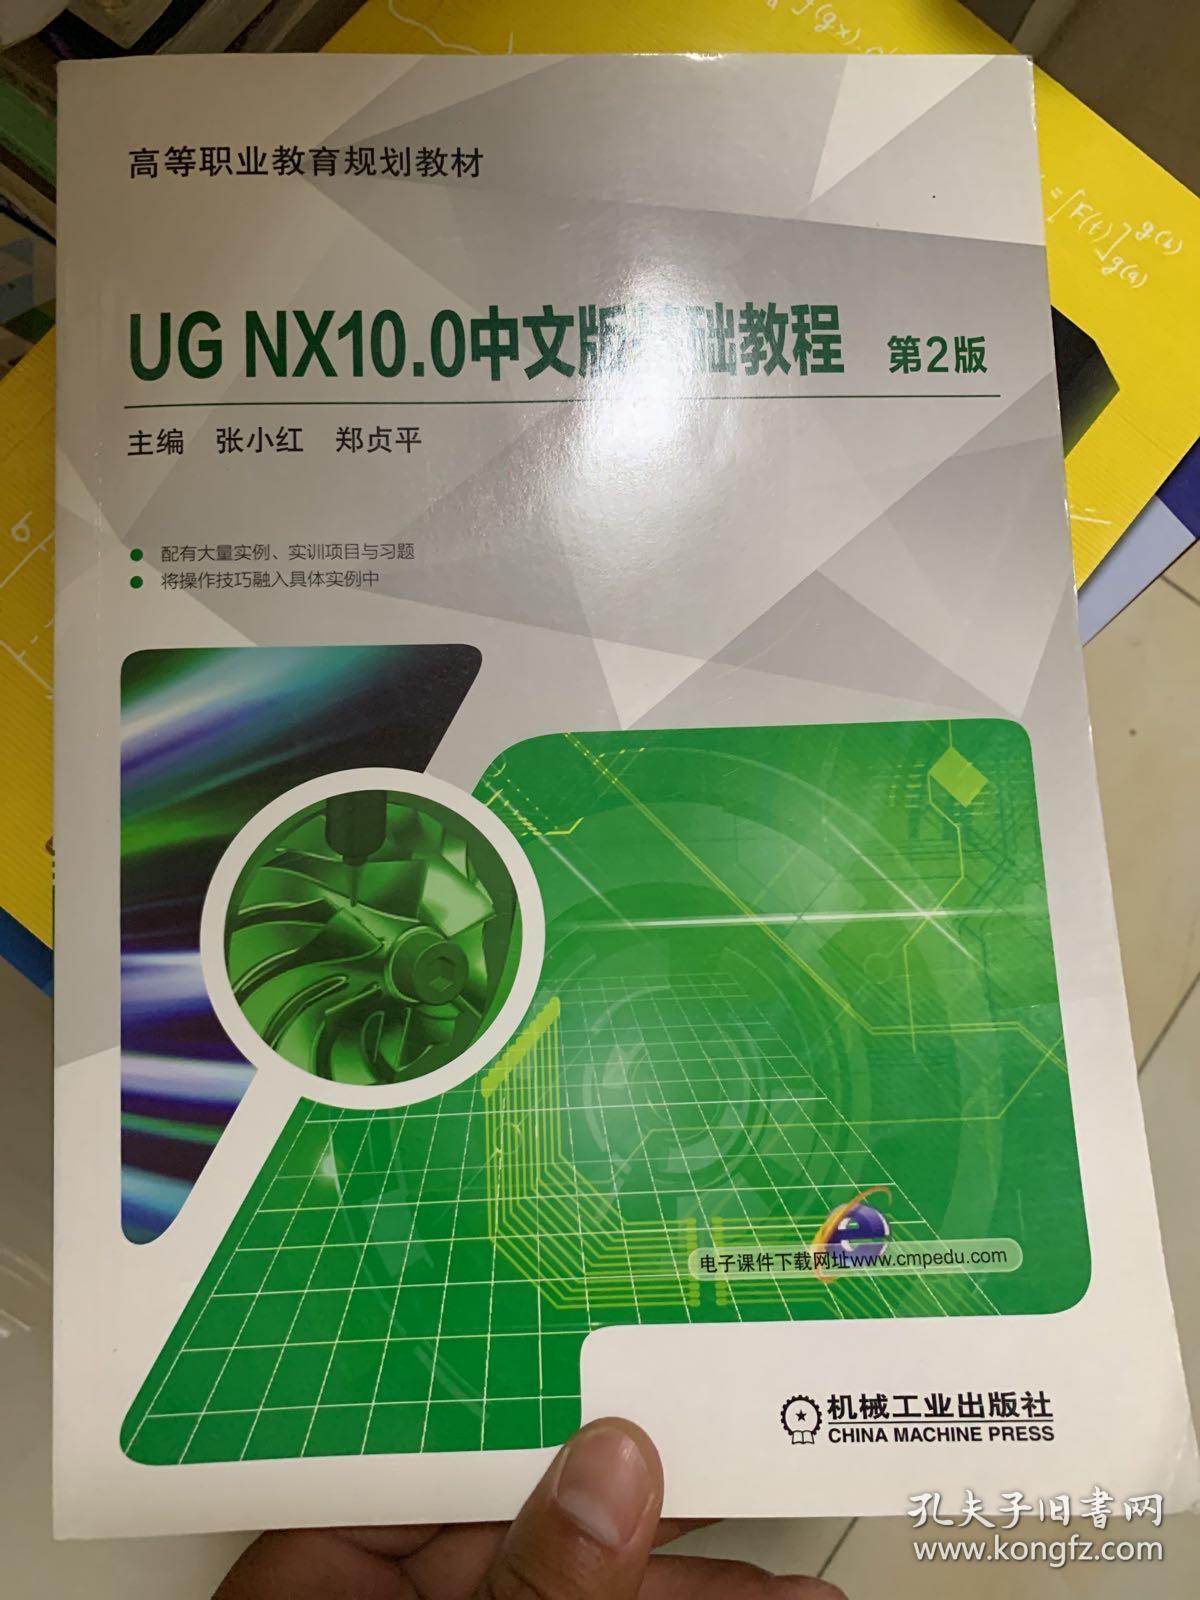 UG NX10.0中文版基础教程 第2版